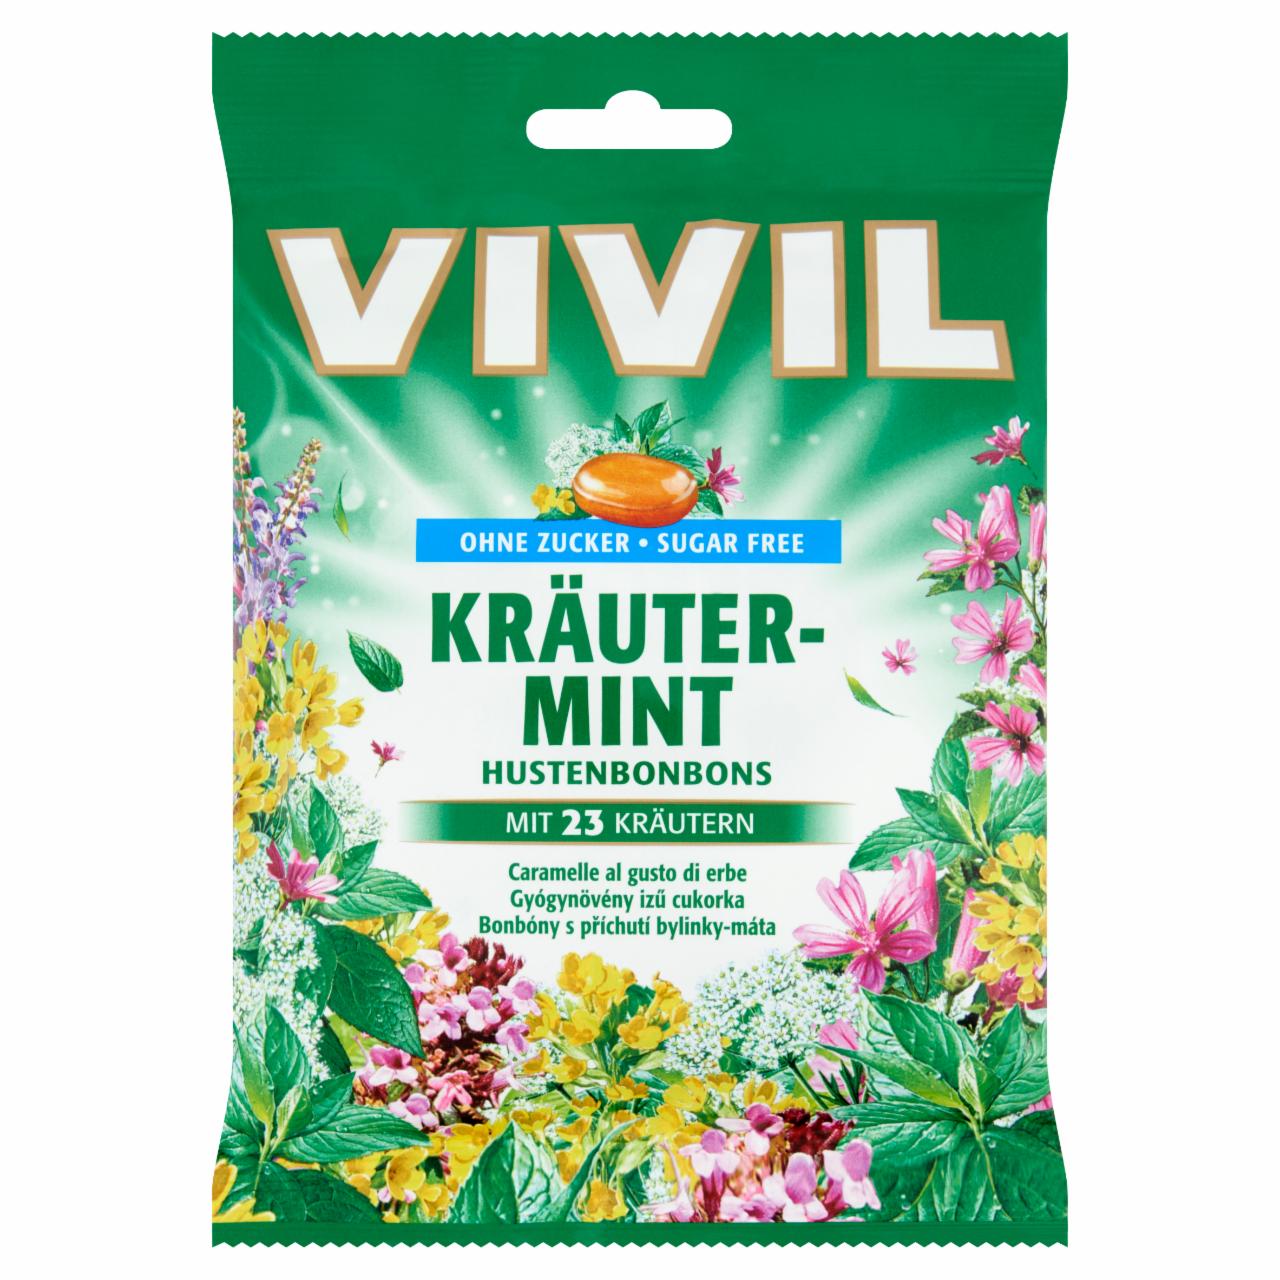 Képek - Vivil cukormentes gyógynövény ízű töltetlen keménycukorka édesítőszerekkel 60 g